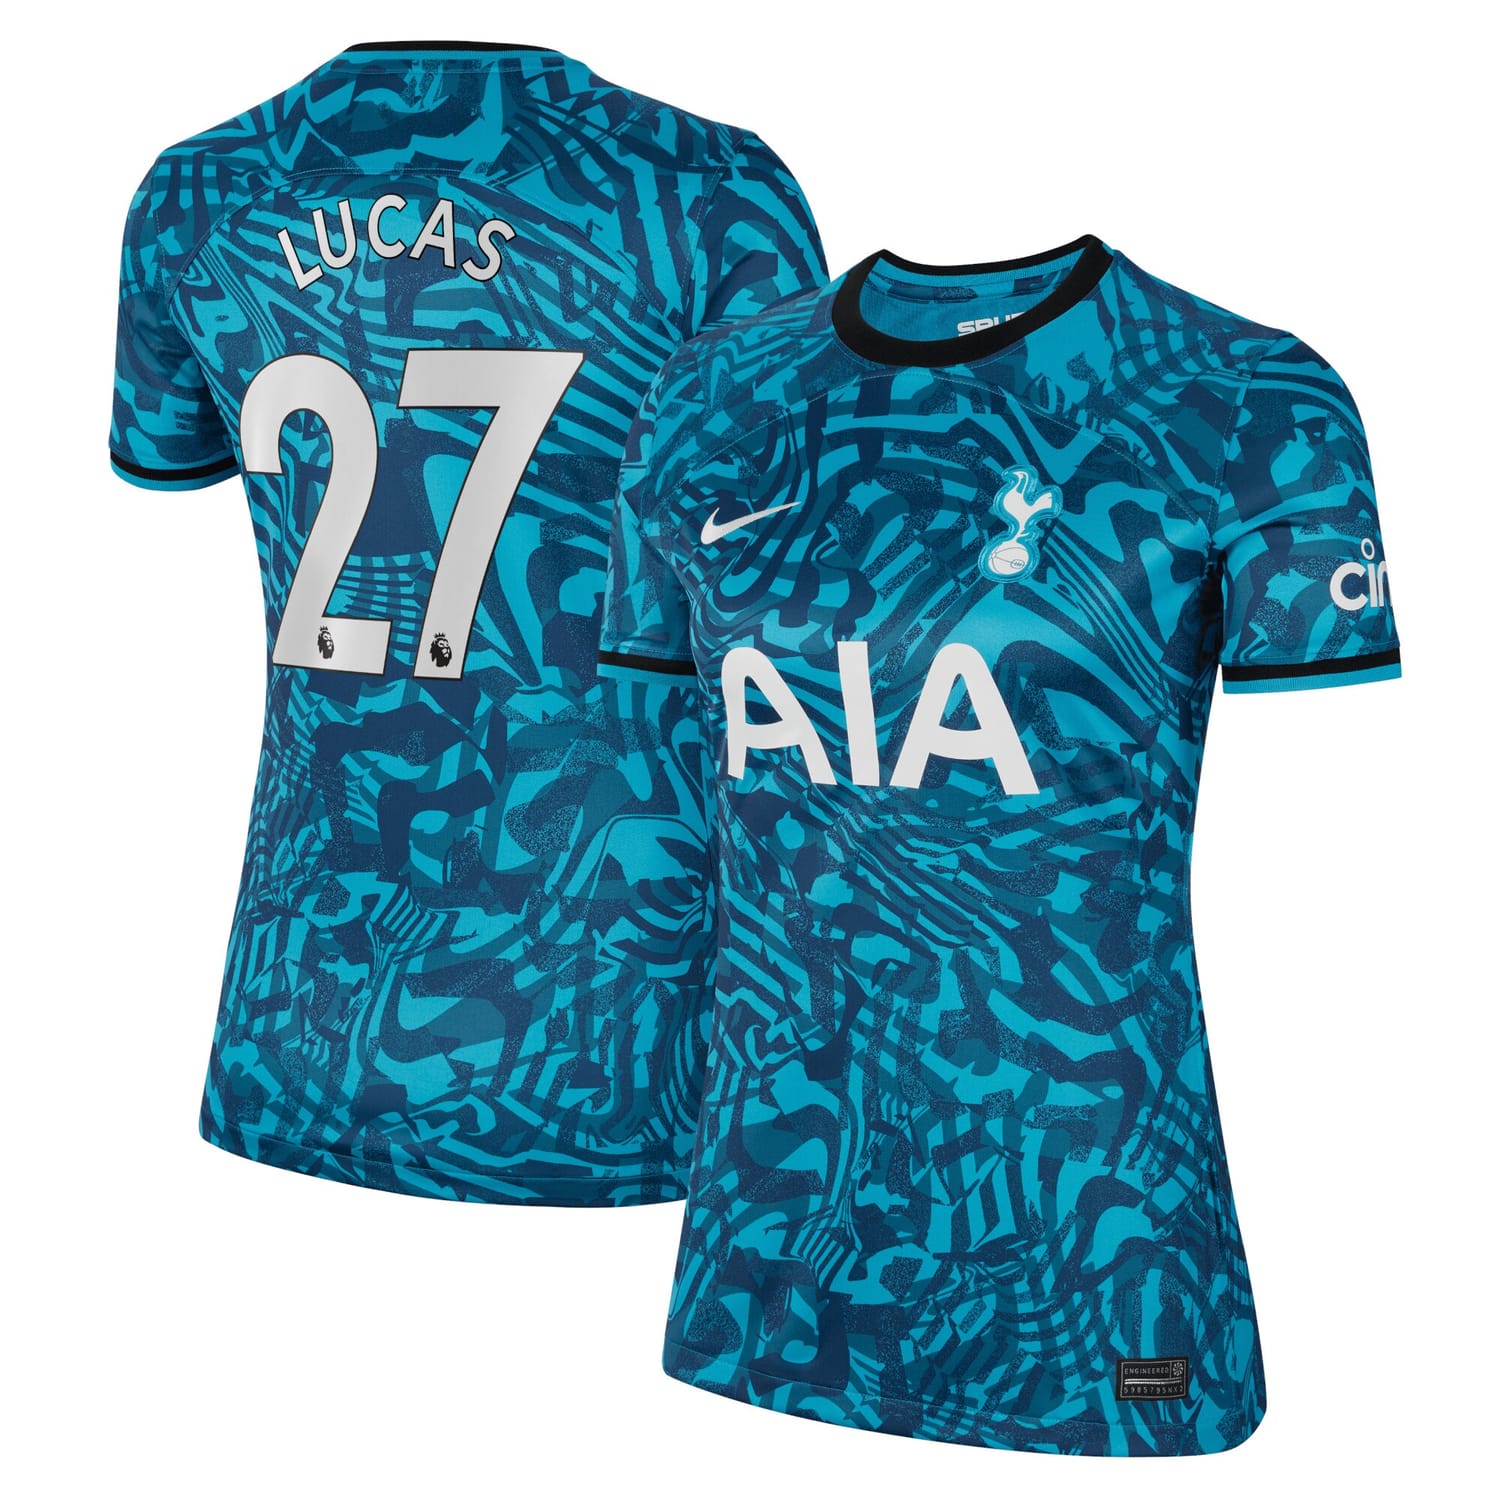 Premier League Tottenham Hotspur Third Jersey Shirt 2022-23 player Lucas Hernandez 27 printing for Women